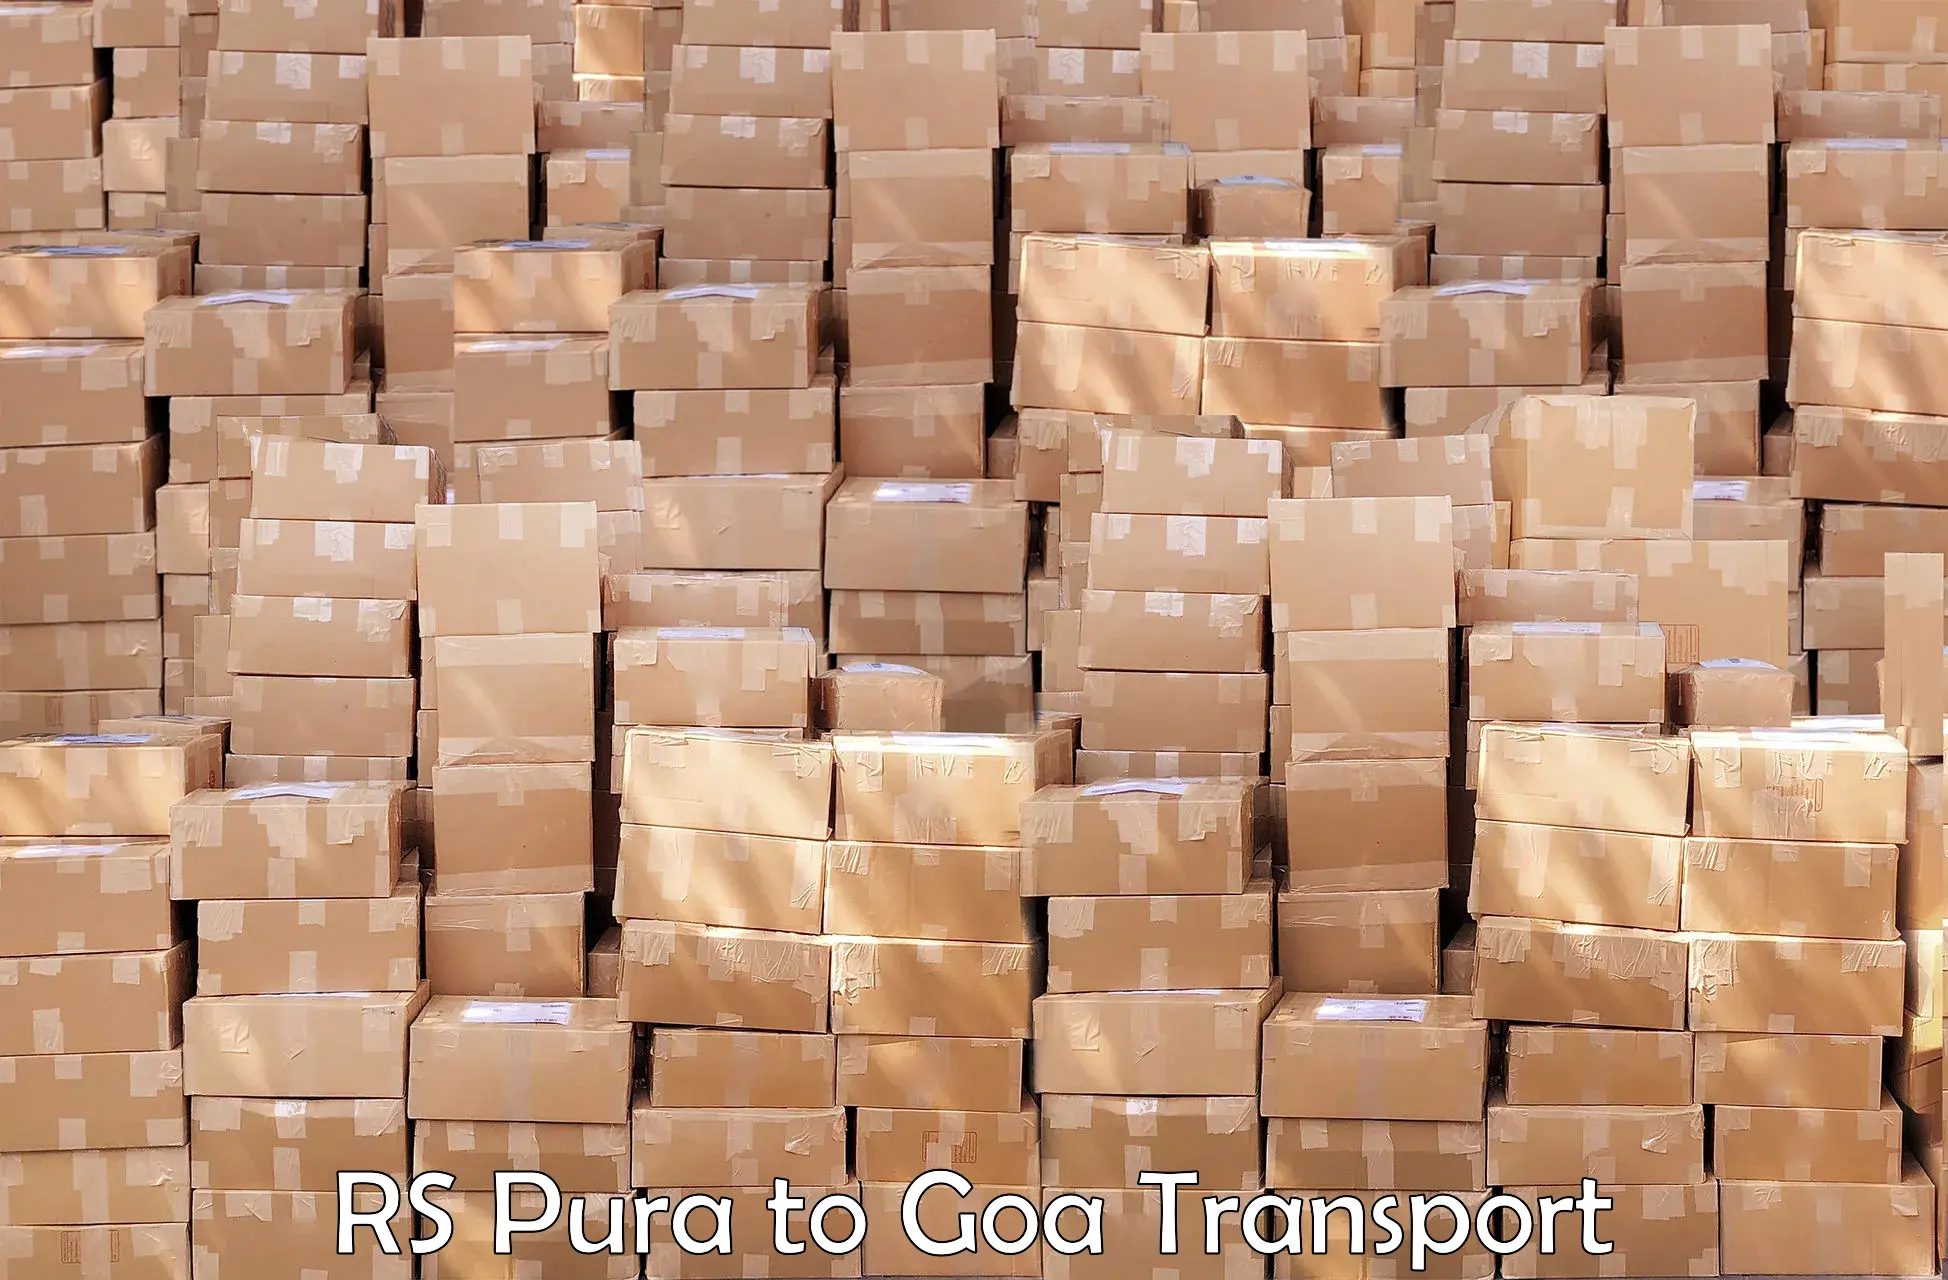 Land transport services RS Pura to Vasco da Gama